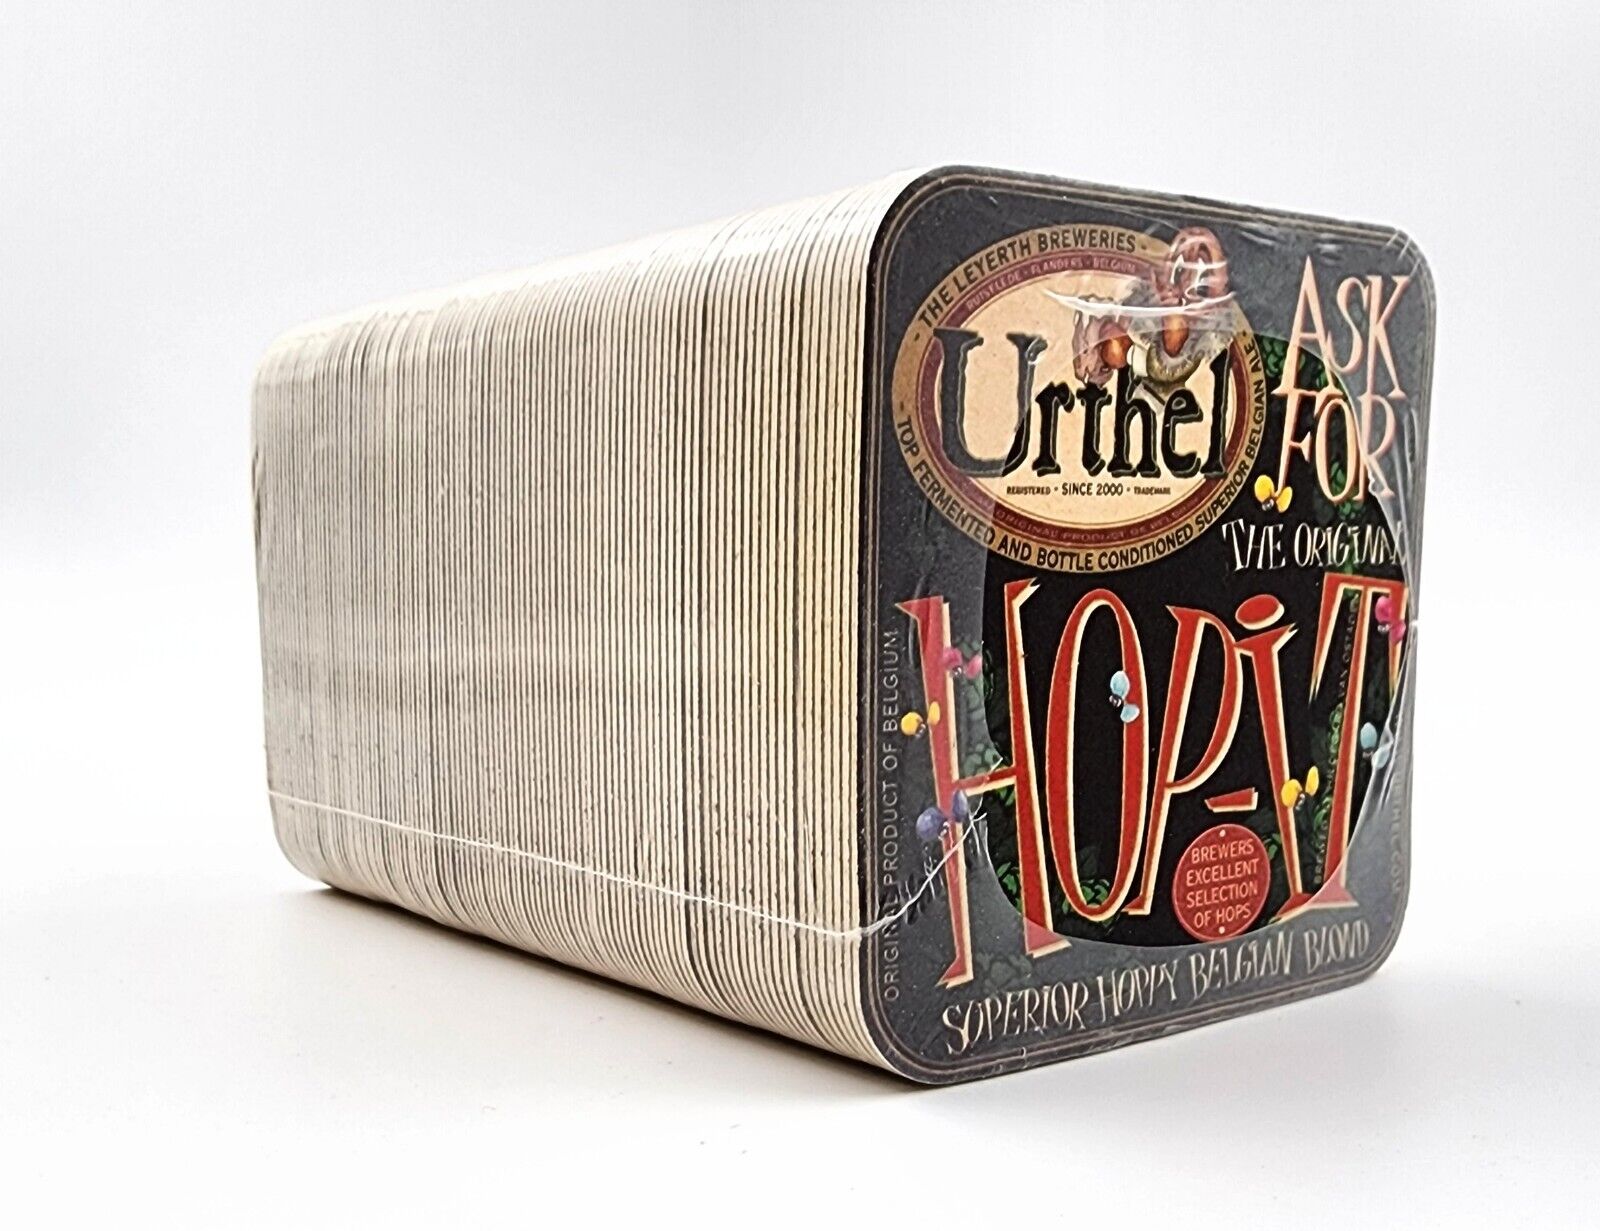 Leyerth Brewery Urthel Vlaemse Bock Hop-It Belgian Blond Beer Coasters 100 Count